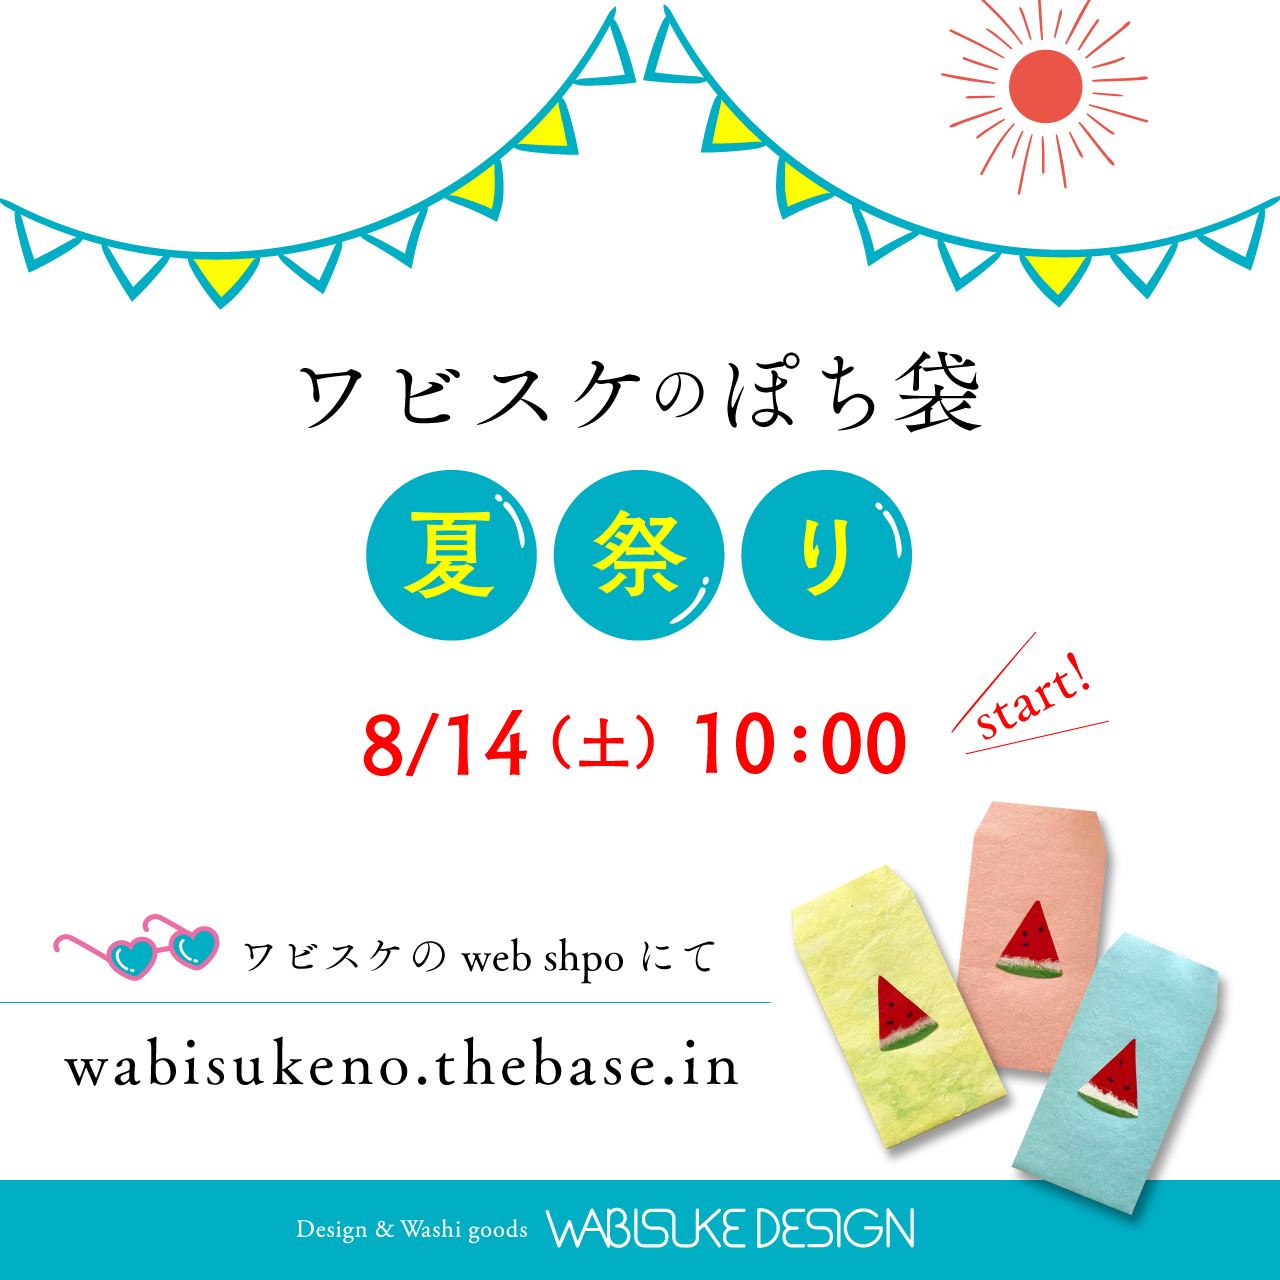 ワビスケのぽち袋 夏祭りを開催します！